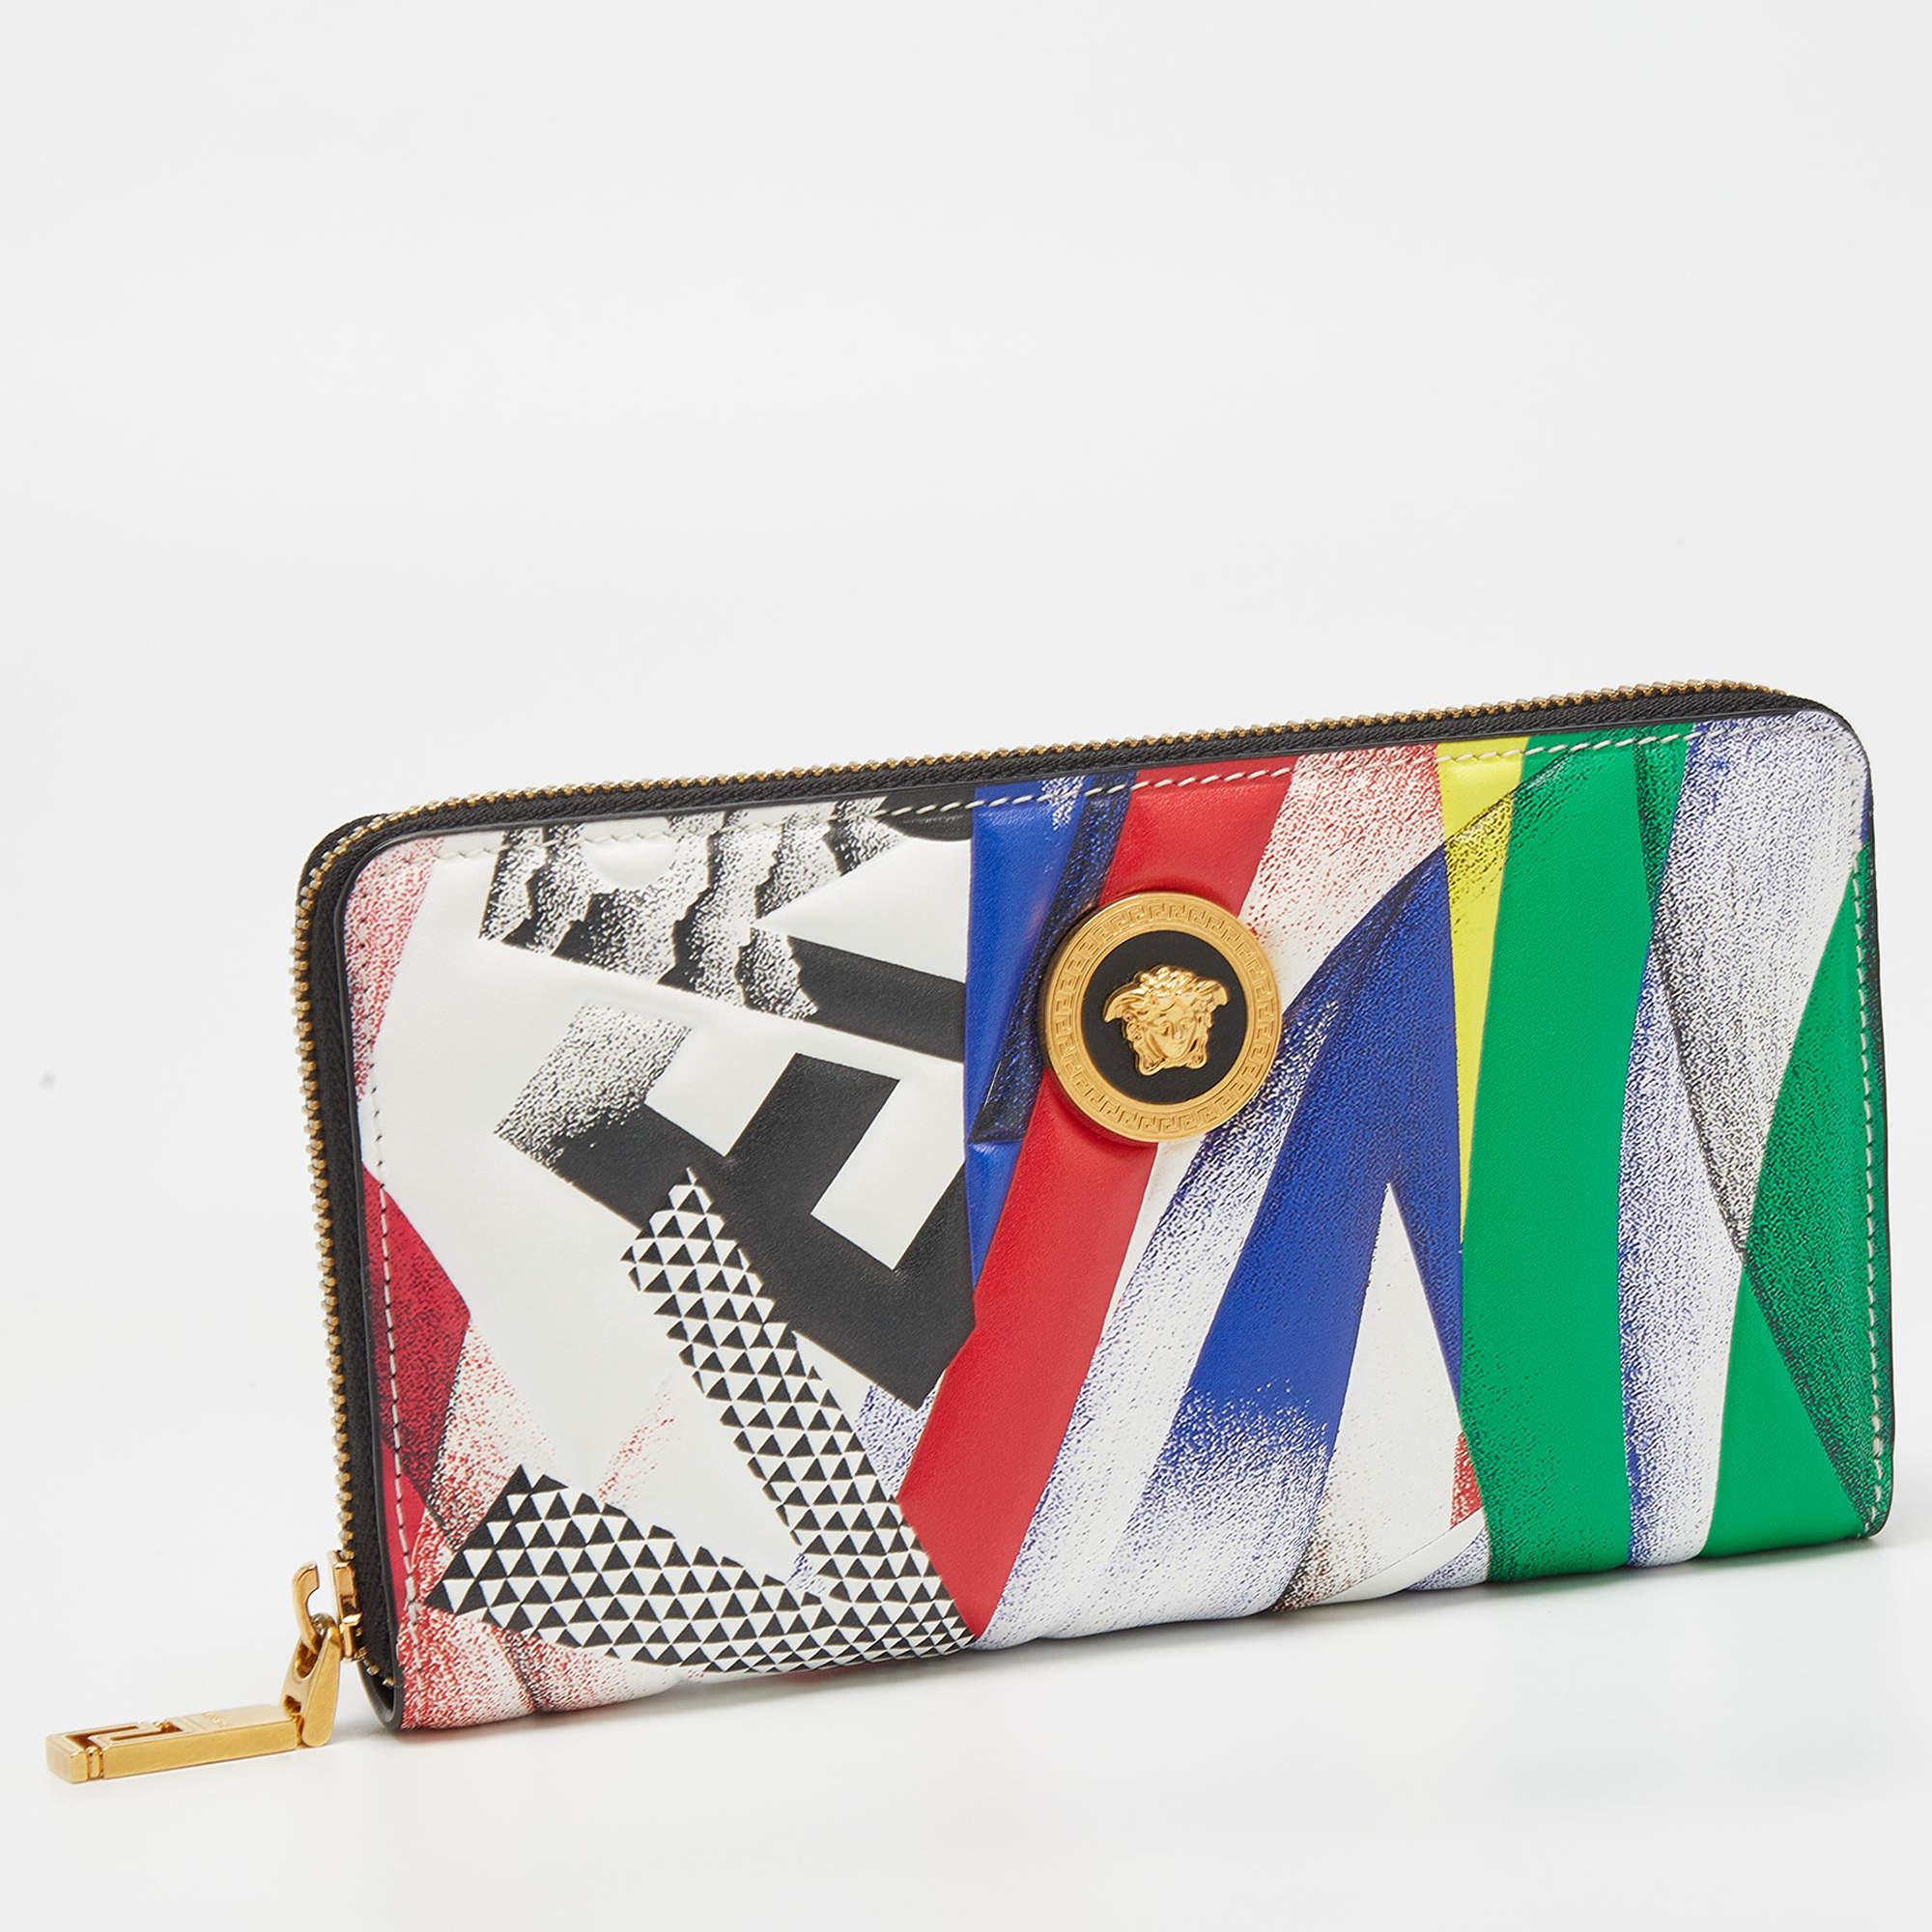 Ce portefeuille Versace est un accessoire idéal pour tous les jours. Il est fabriqué à partir de matériaux de qualité à l'extérieur et comporte un intérieur compartimenté.

